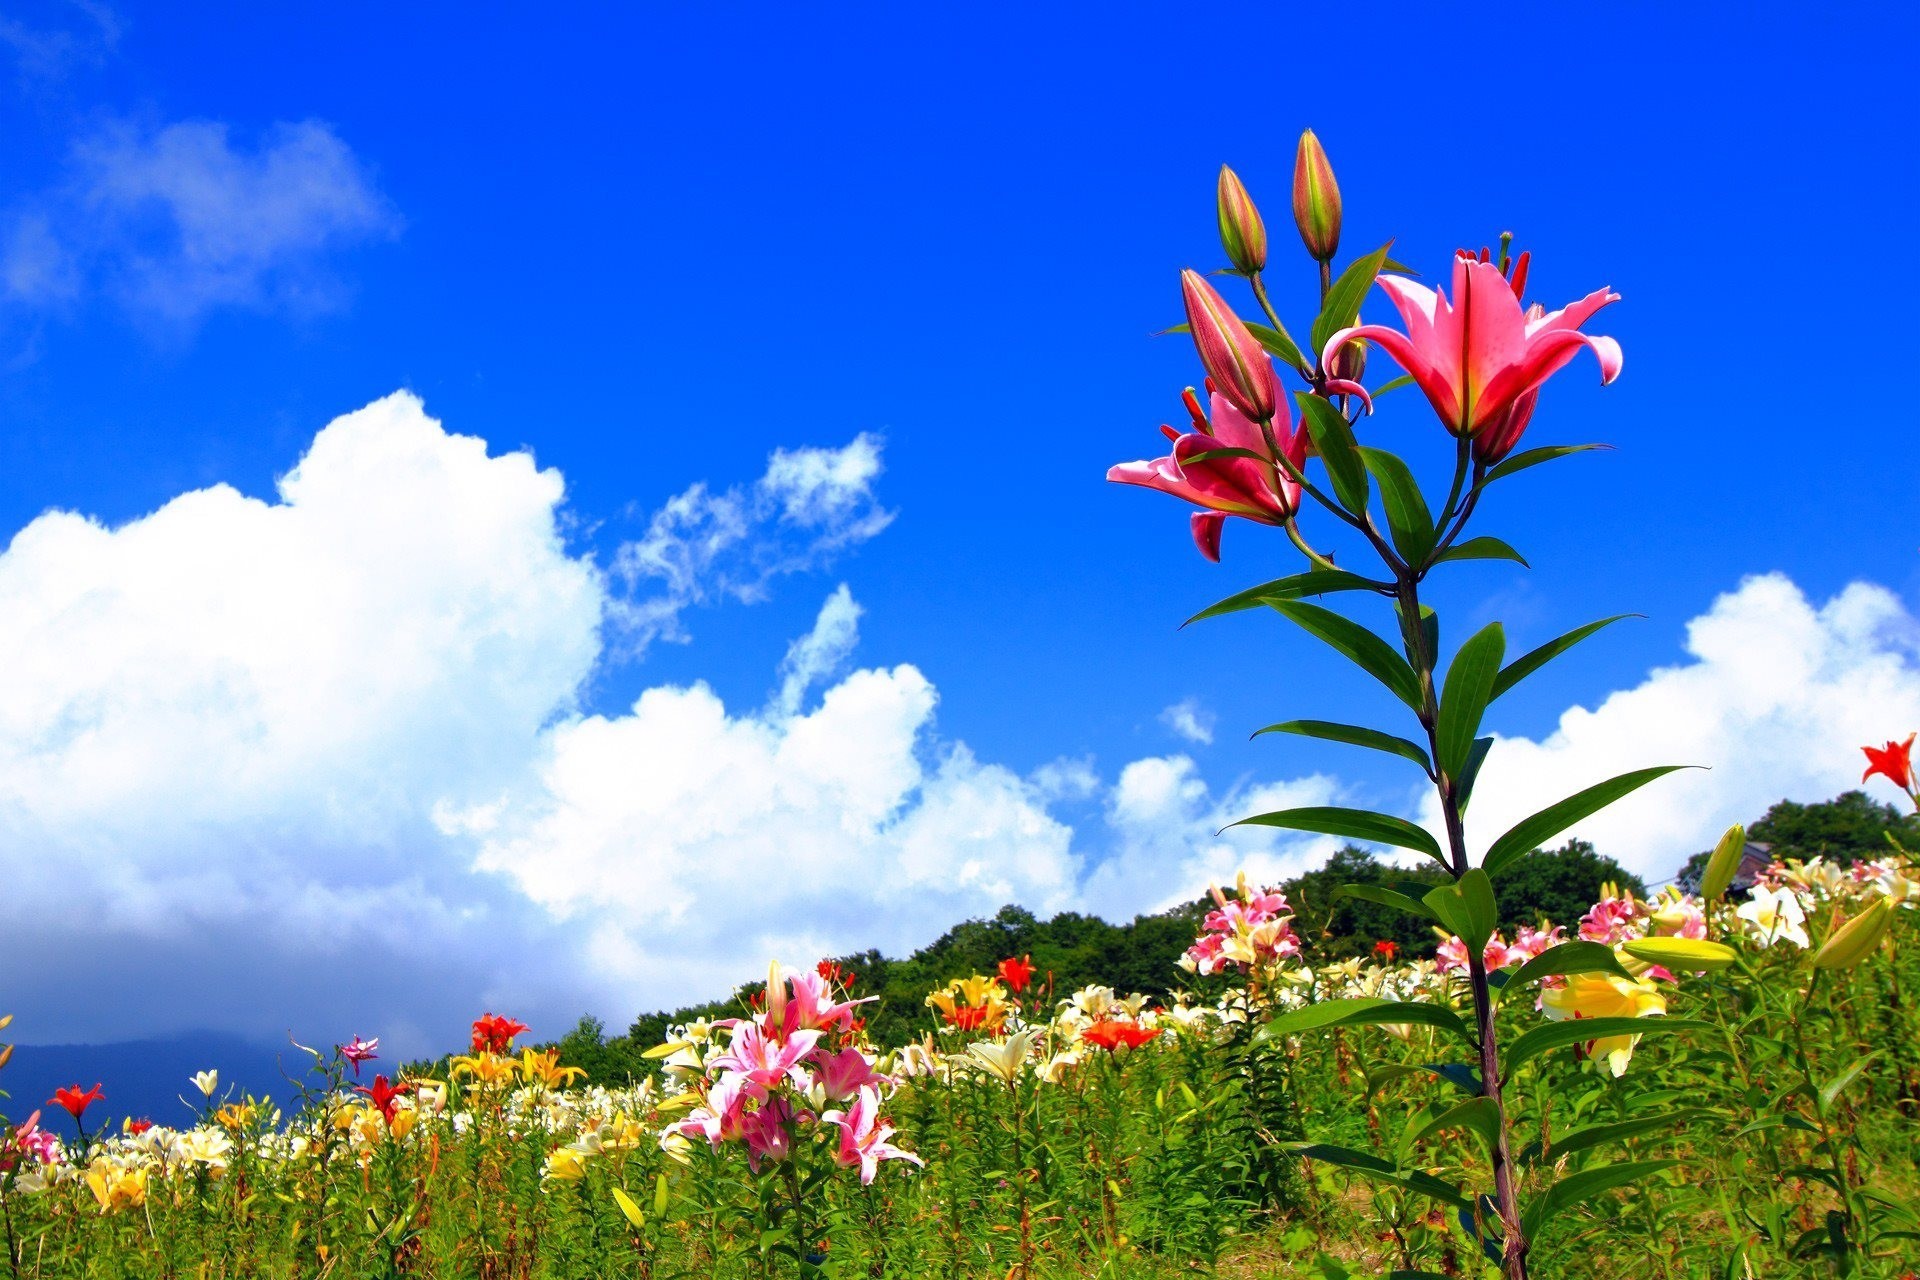 Flower nature. Цветы на фоне неба. Цветы на Поляне. Лилии в природе. Красивые пейзажи природы с цветами.